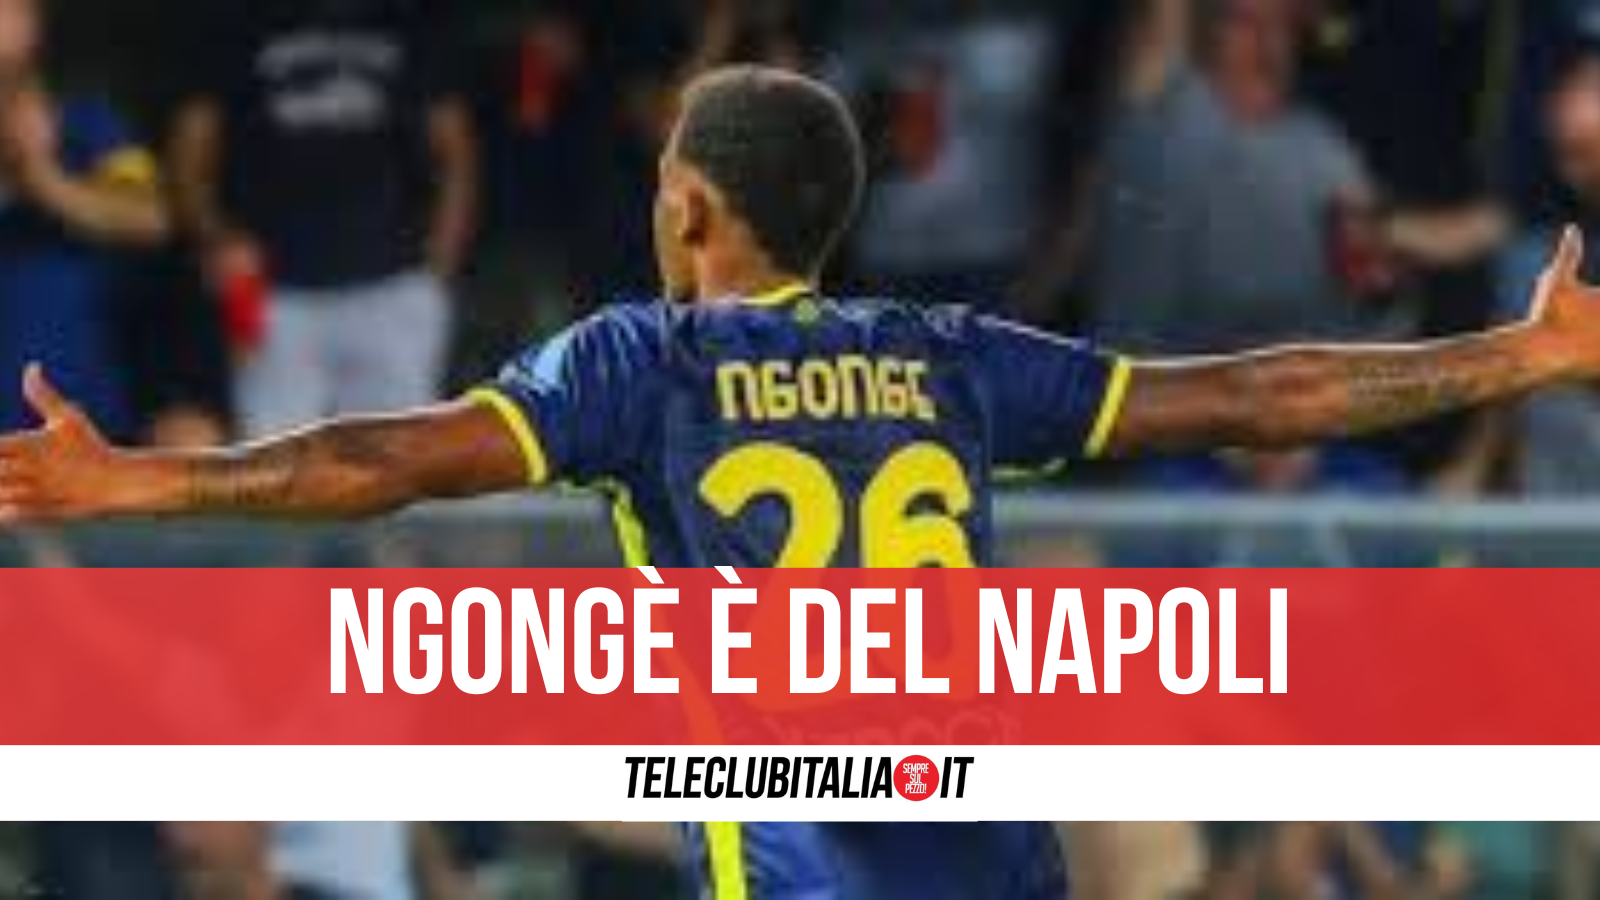 Ngongè è un nuovo calciatore del Napoli e volerà subito in Arabia